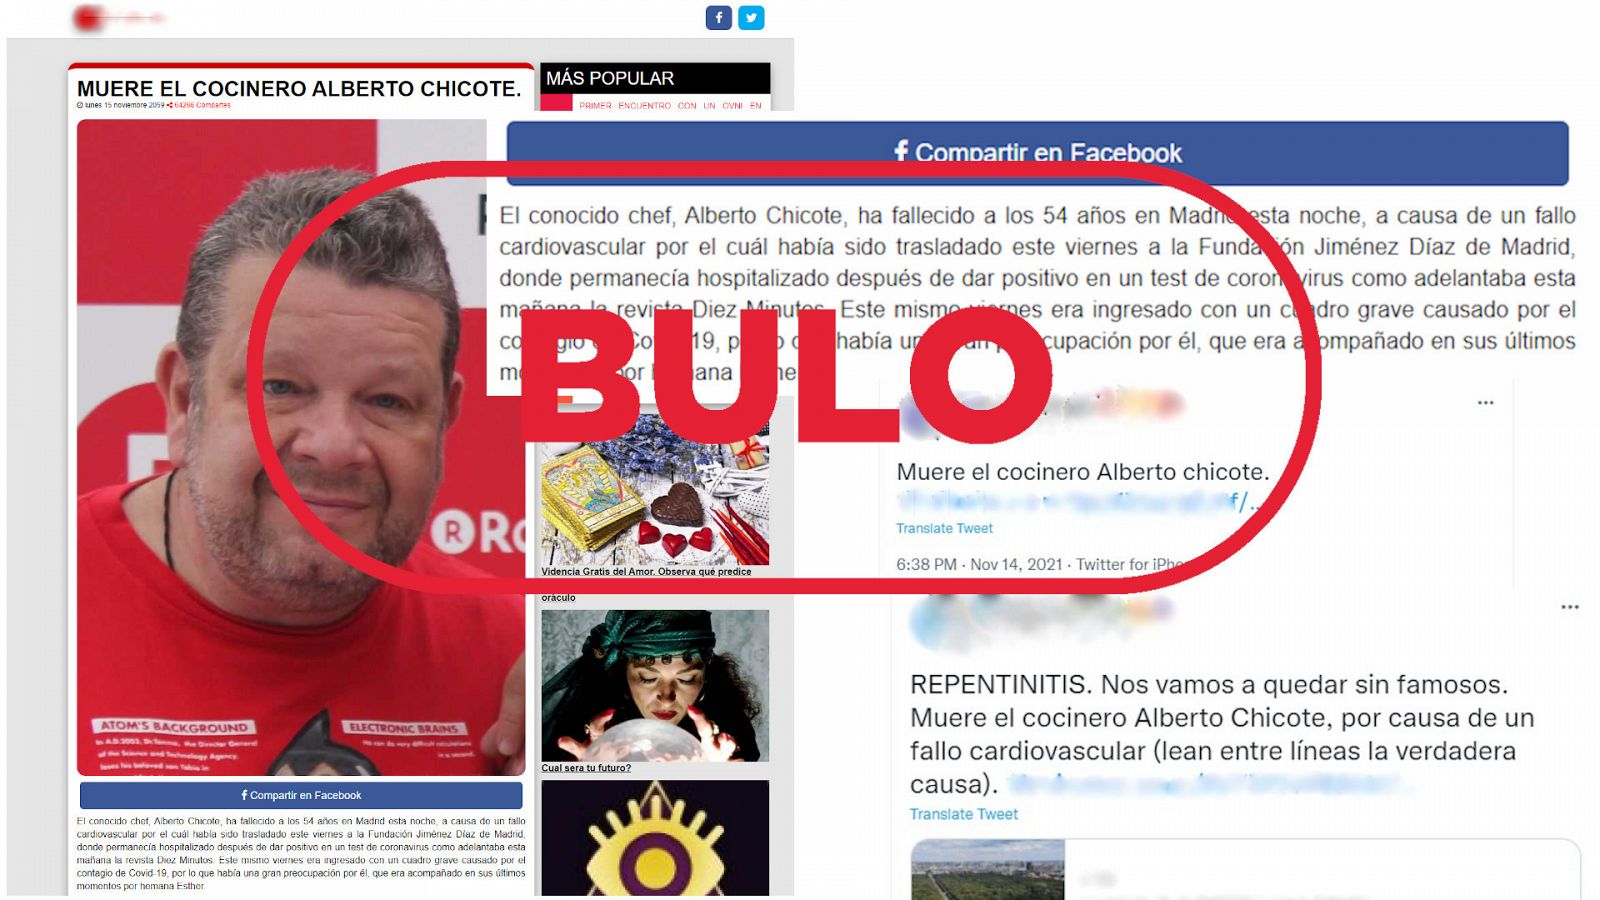 La página web que publica el bulo de que Alberto Chicote ha muerto y dos tuits que reproducen ese mensaje falso, con el sello bulo en rojo de VerificaRTVE